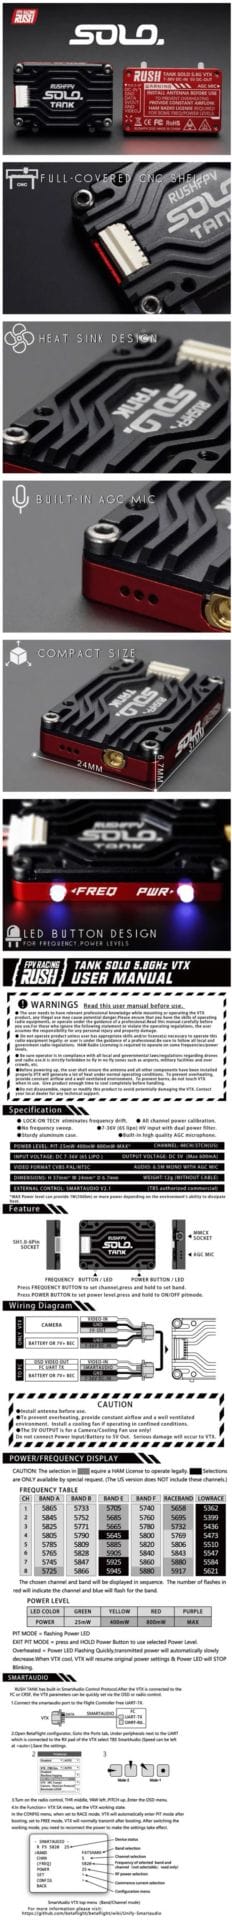 RushFPV Rush Tank SOLO 5.8GHz VTX Infographic mantisfpv australia